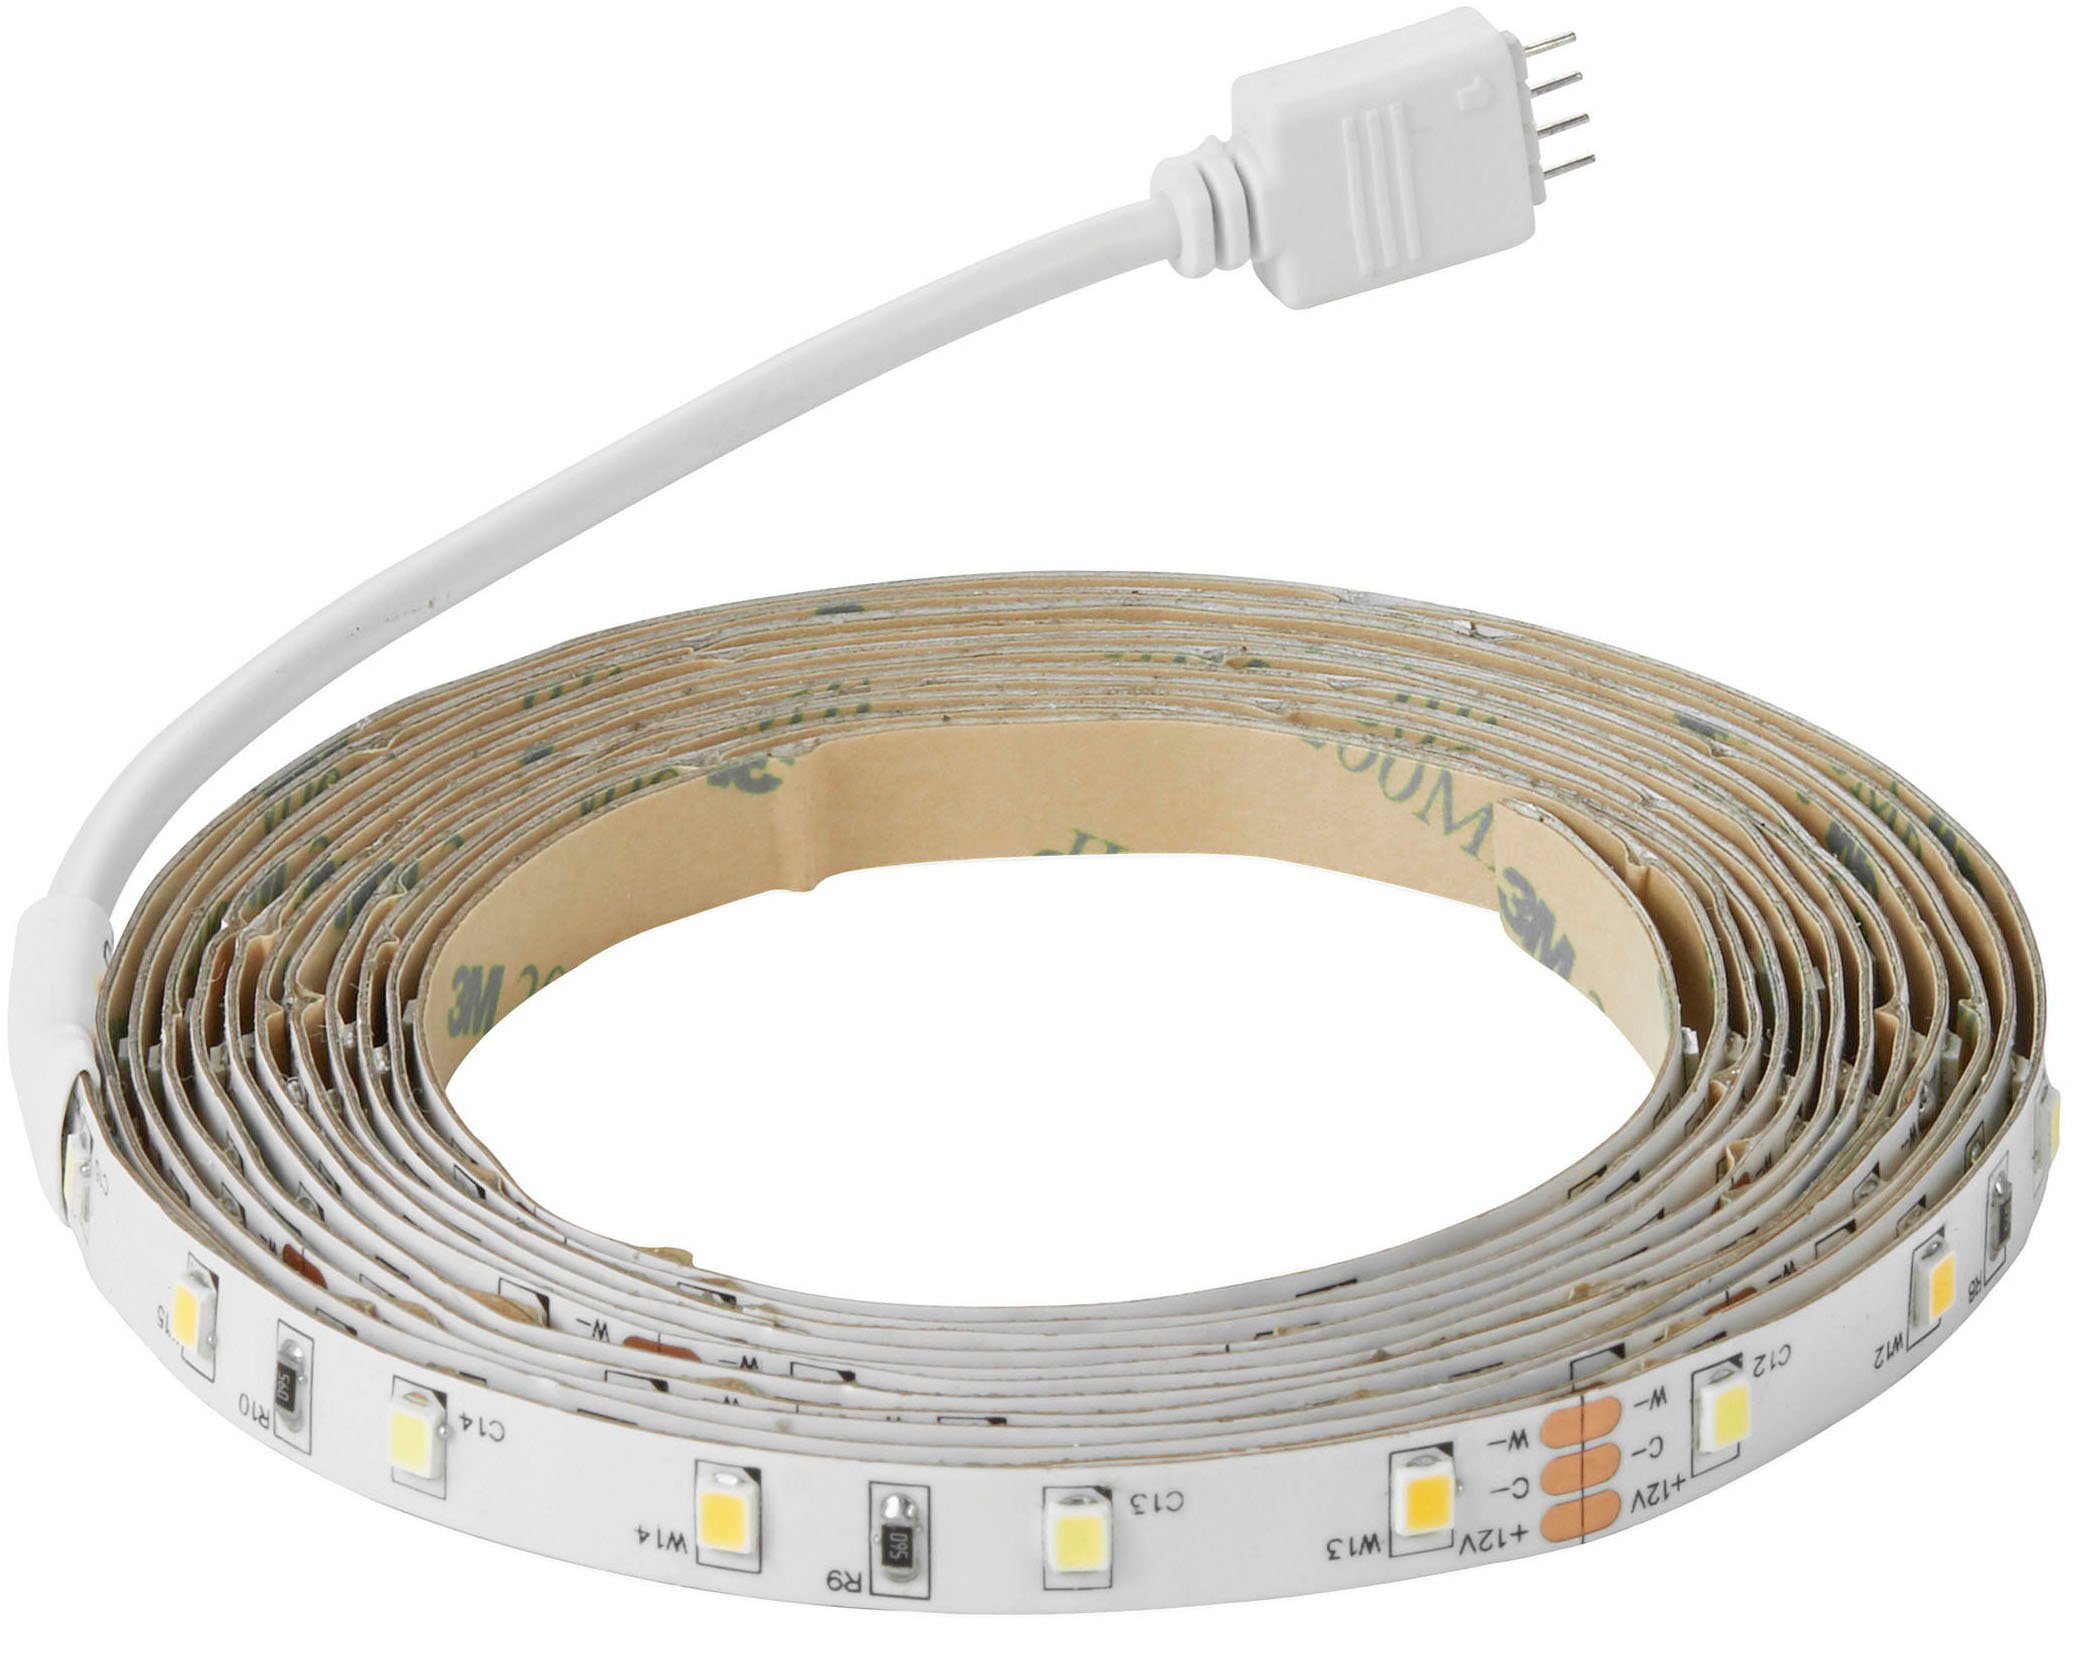 LED inkl. Licht, Fernbedienung Nordlux weißes Einstellbares dimmbares Ledstrip, Stripe und